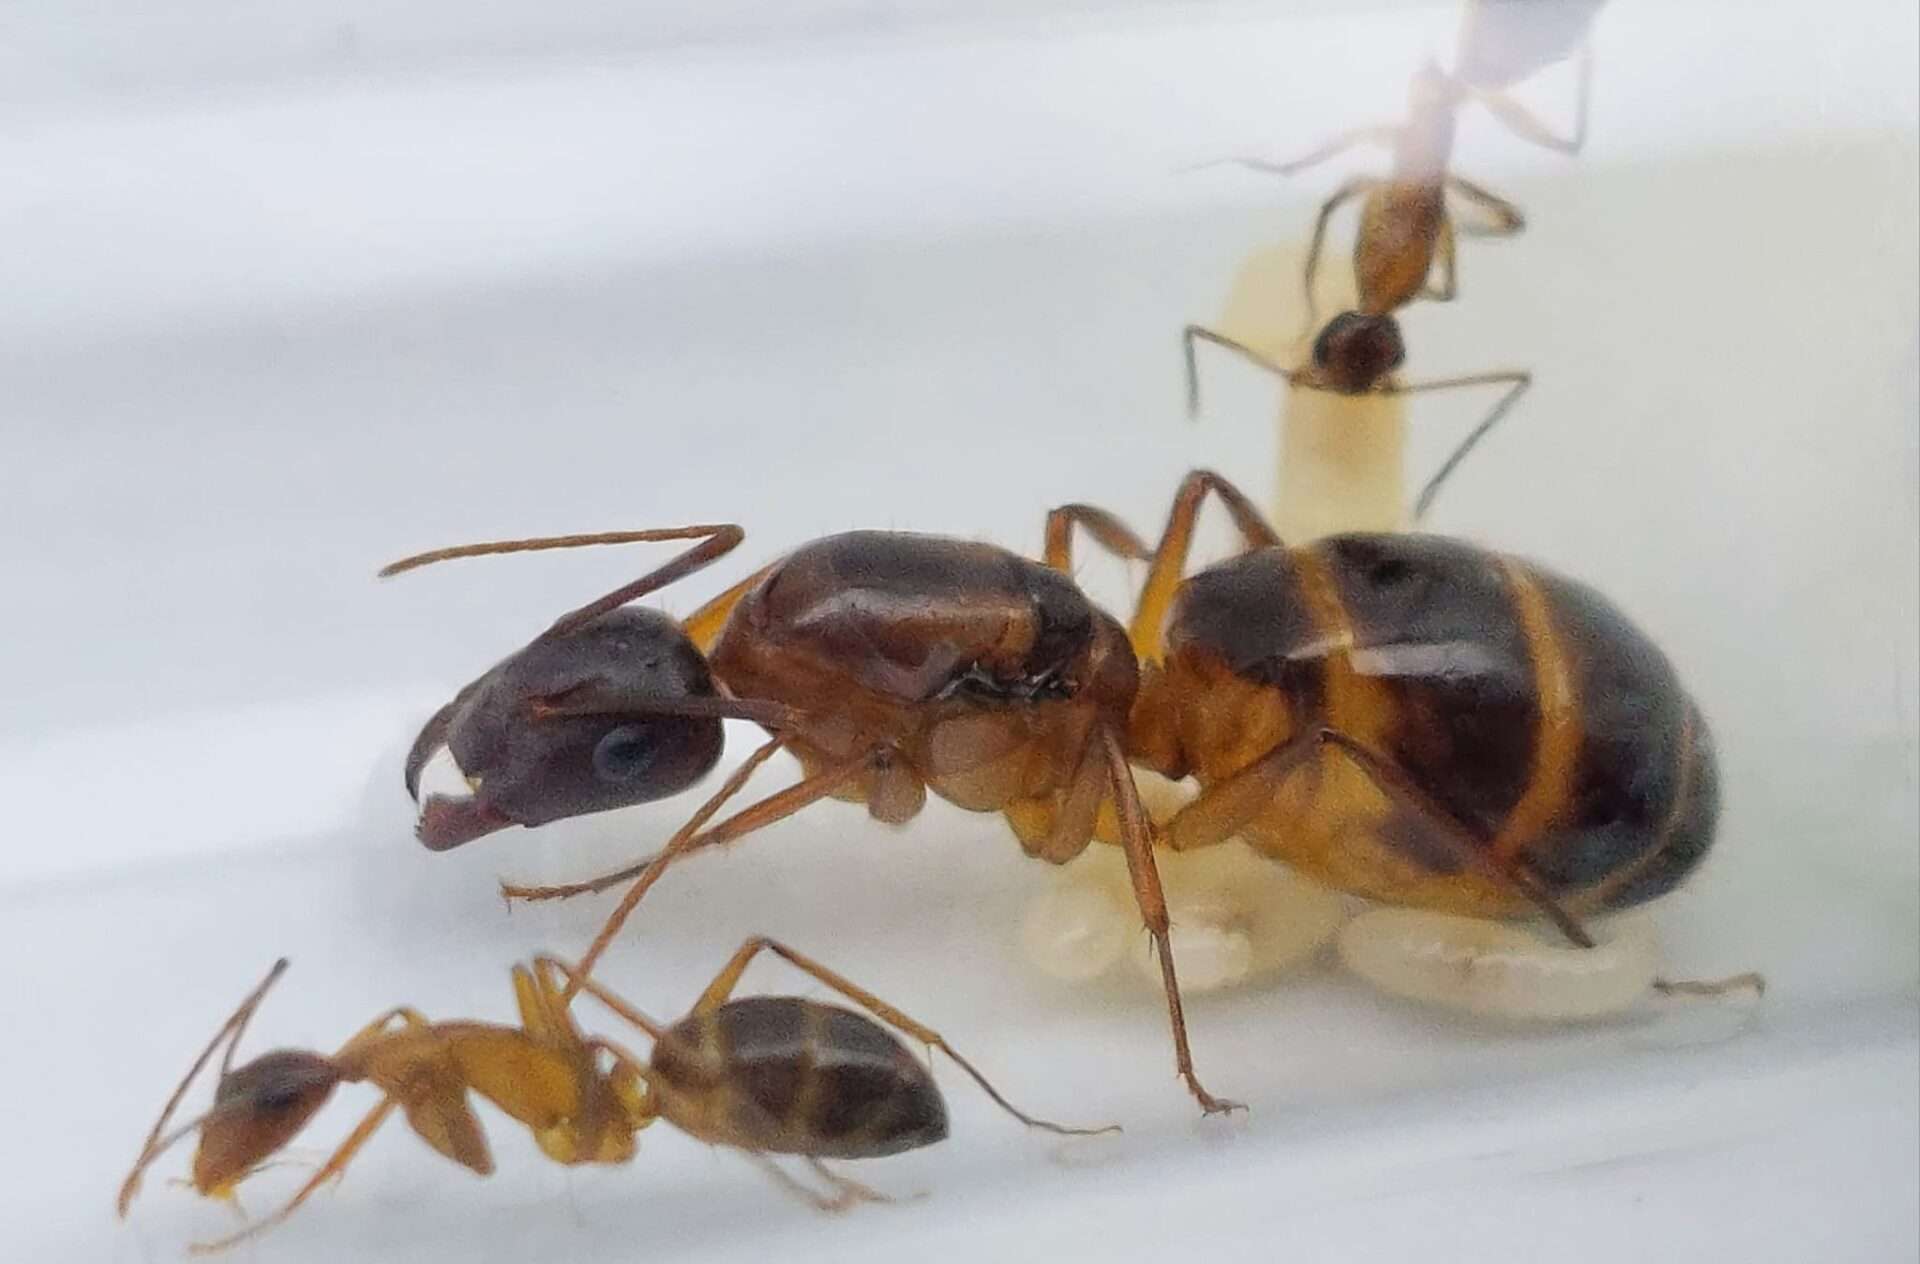 Camponotus pilicornis, eine recht große, anfängerfreundliche Ameisenart